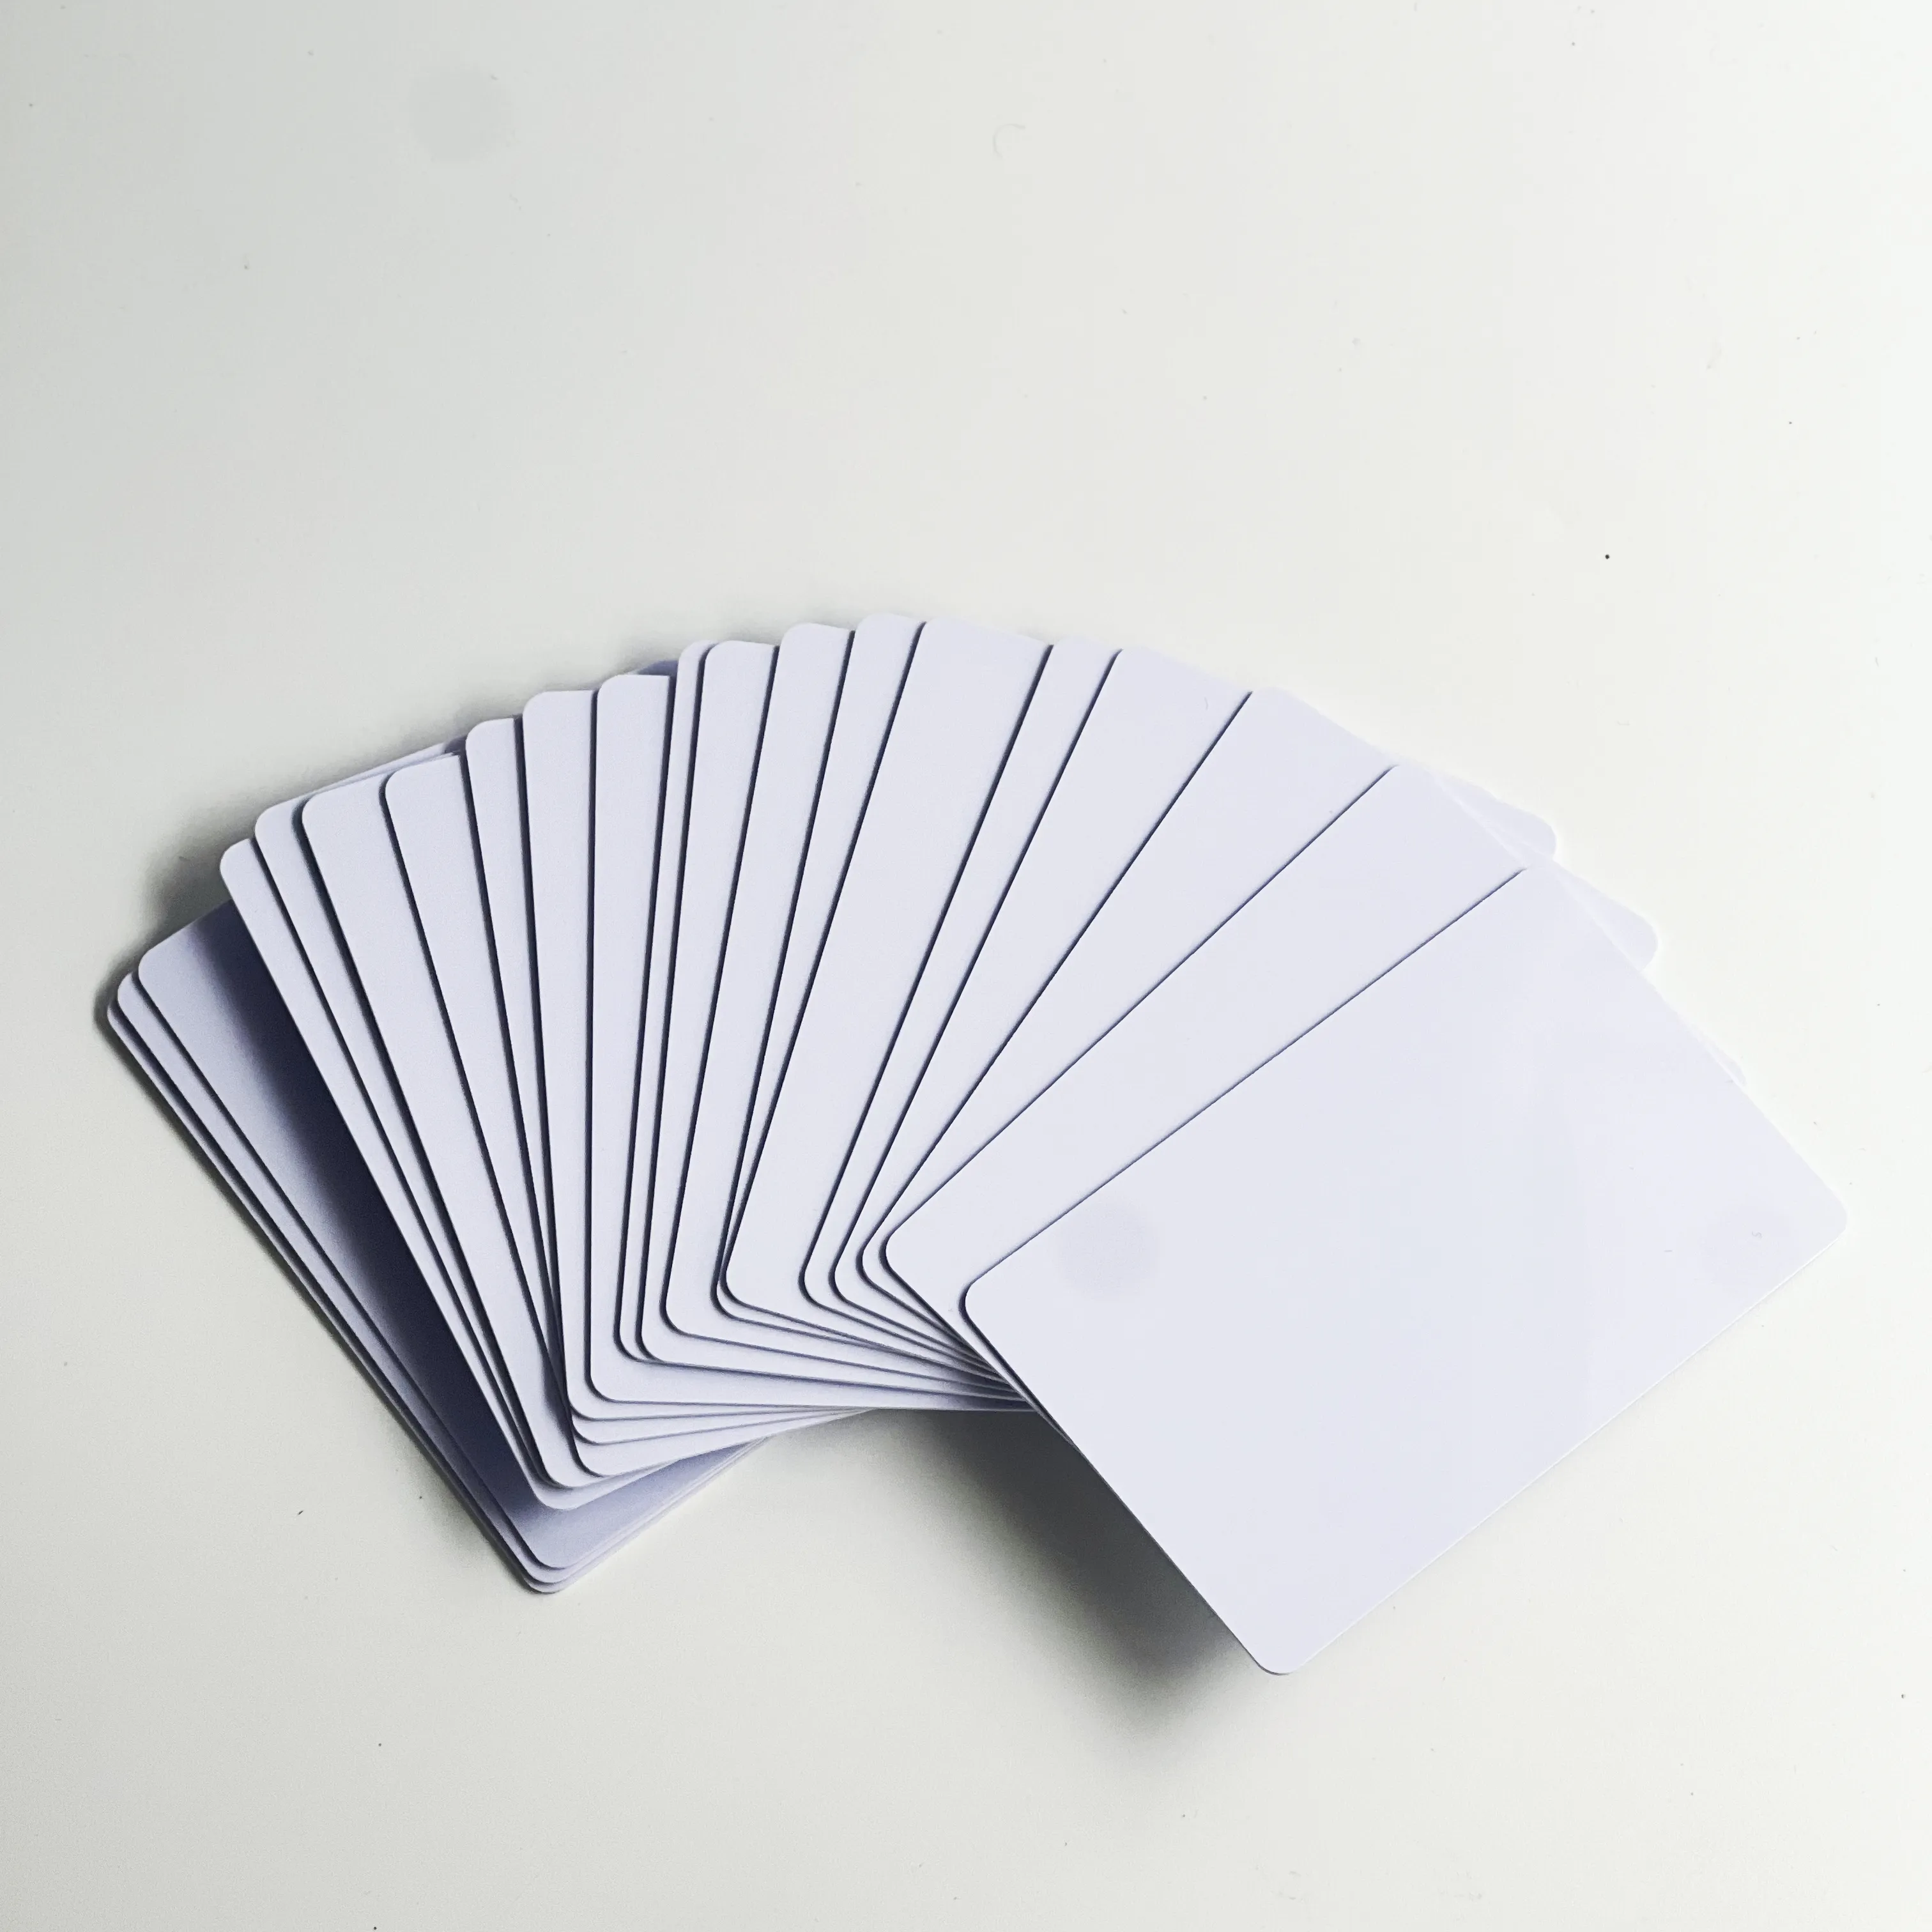 Impressora de cartões de identificação em PVC branco UHF para impressão de longo alcance RFID